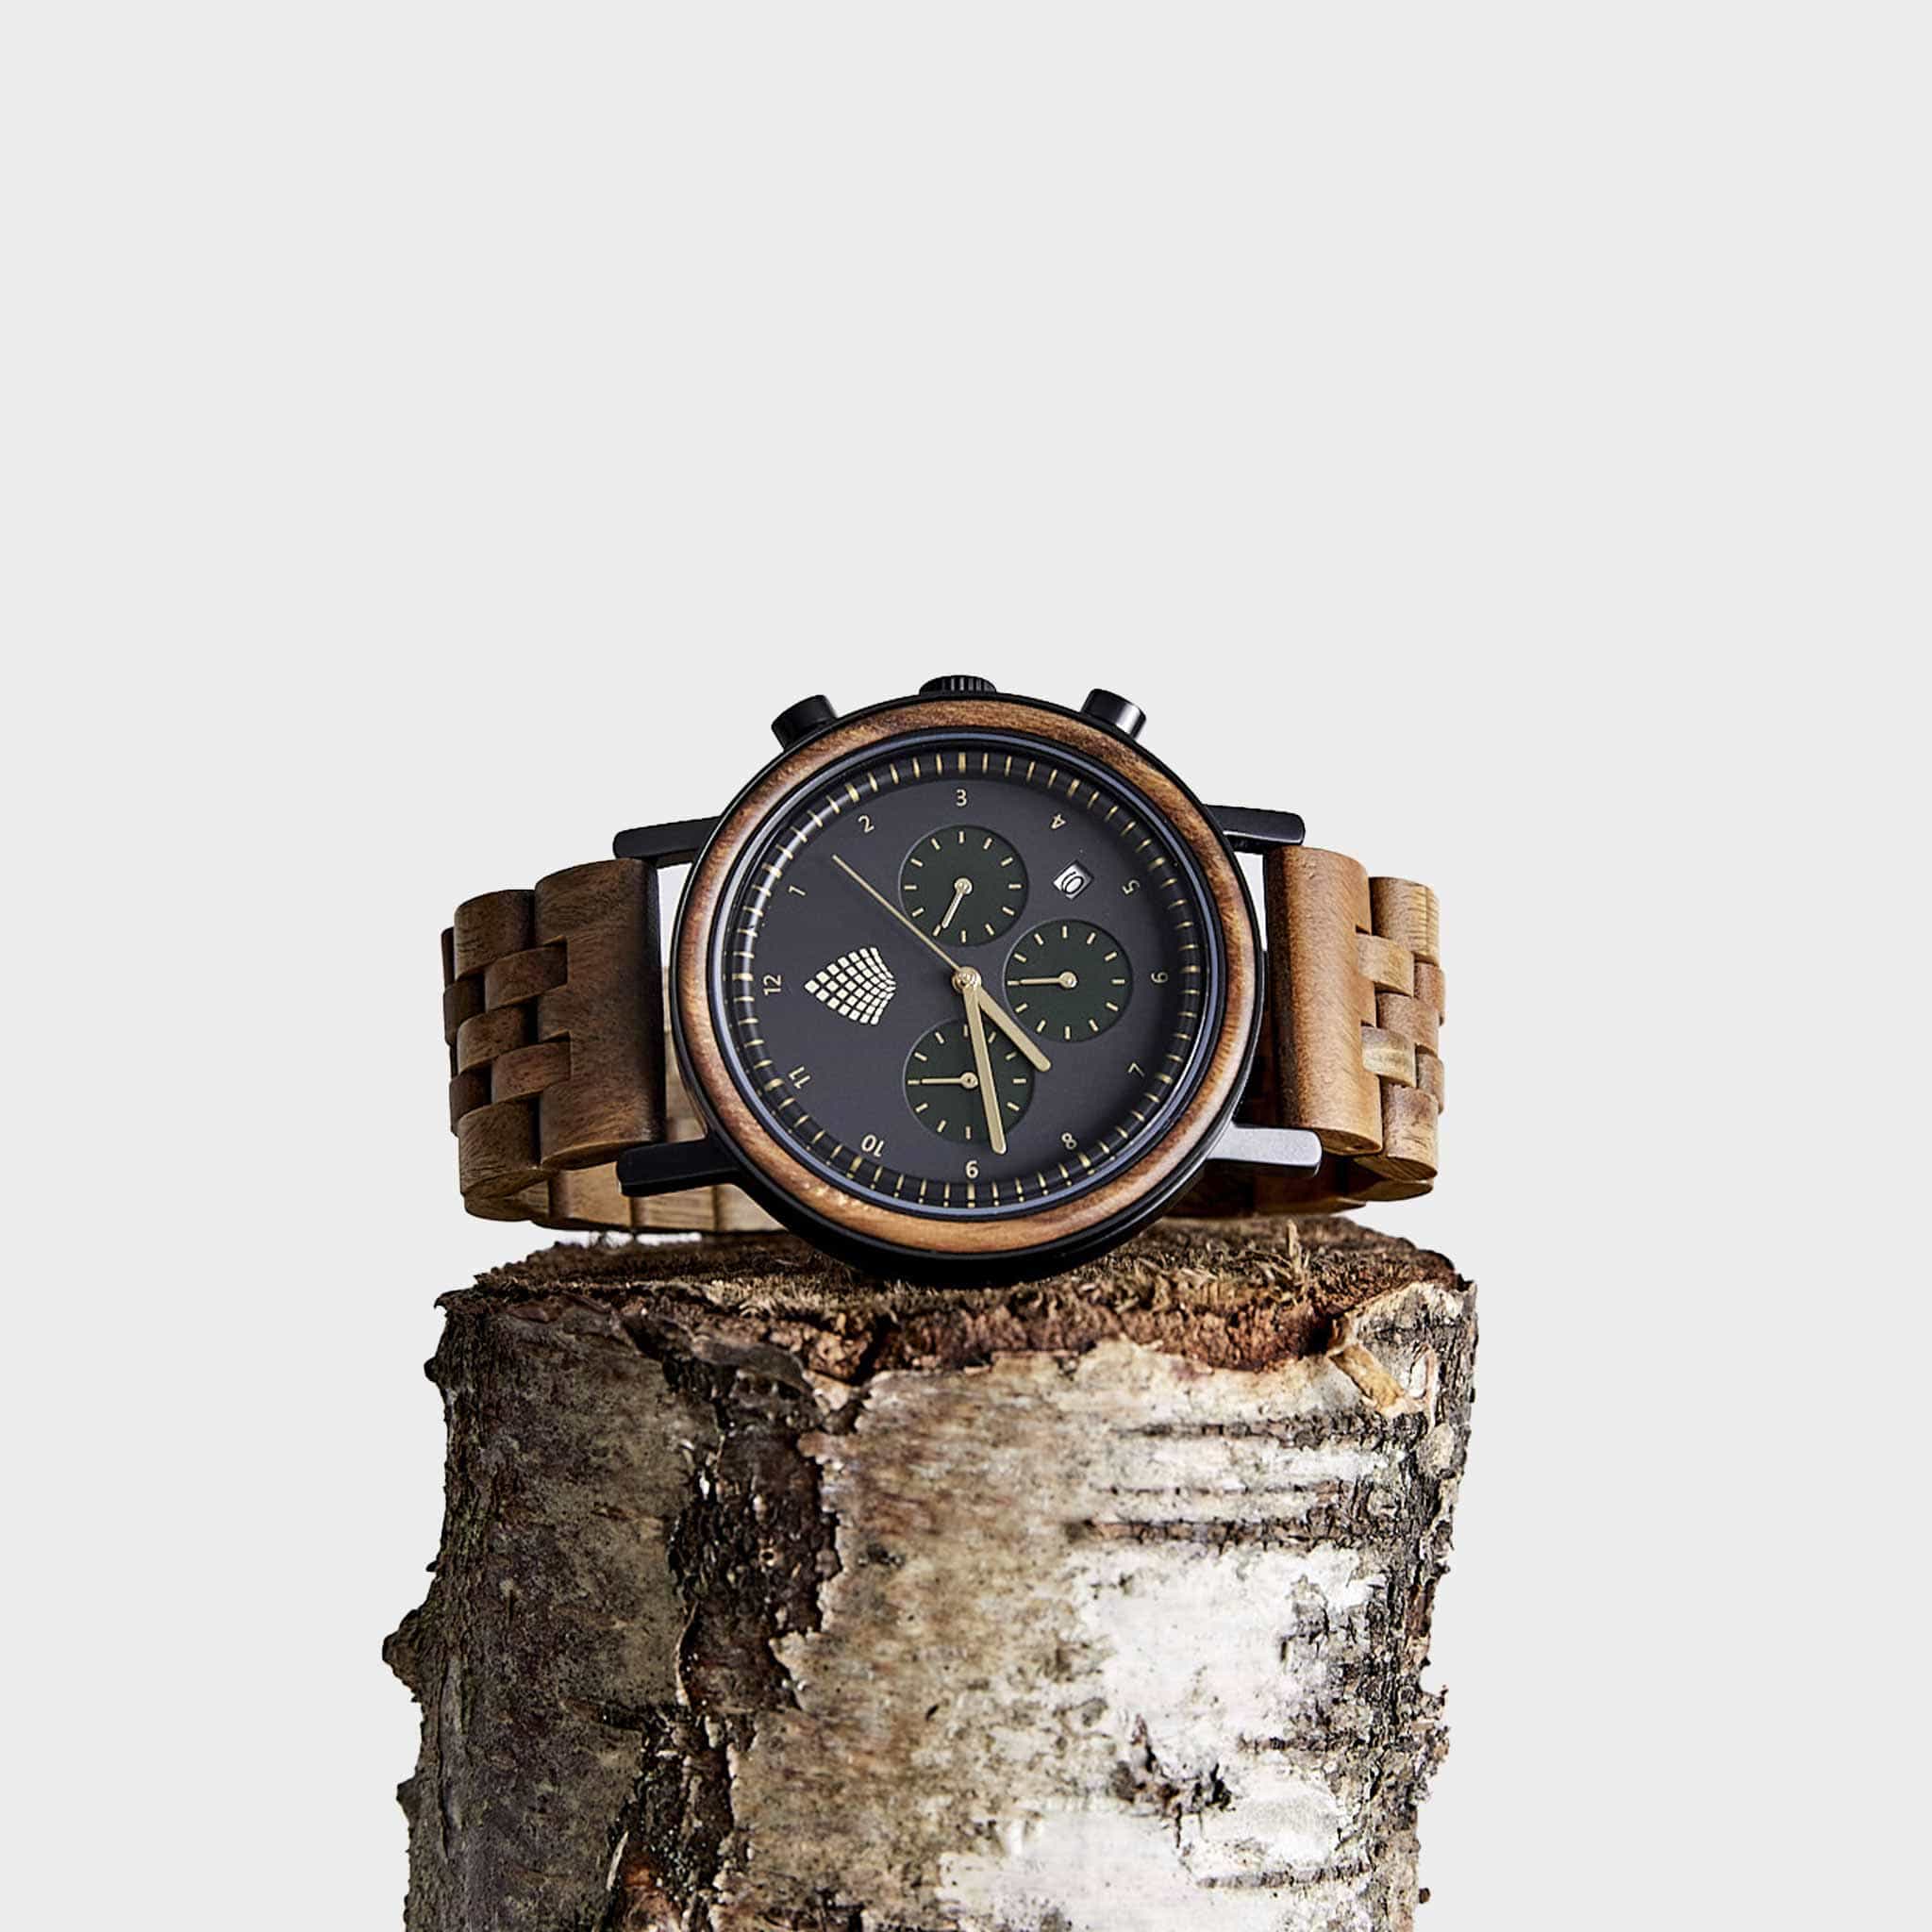 Finest handmade watches from the Vallée de Joux: Romain Gauthier (Video)